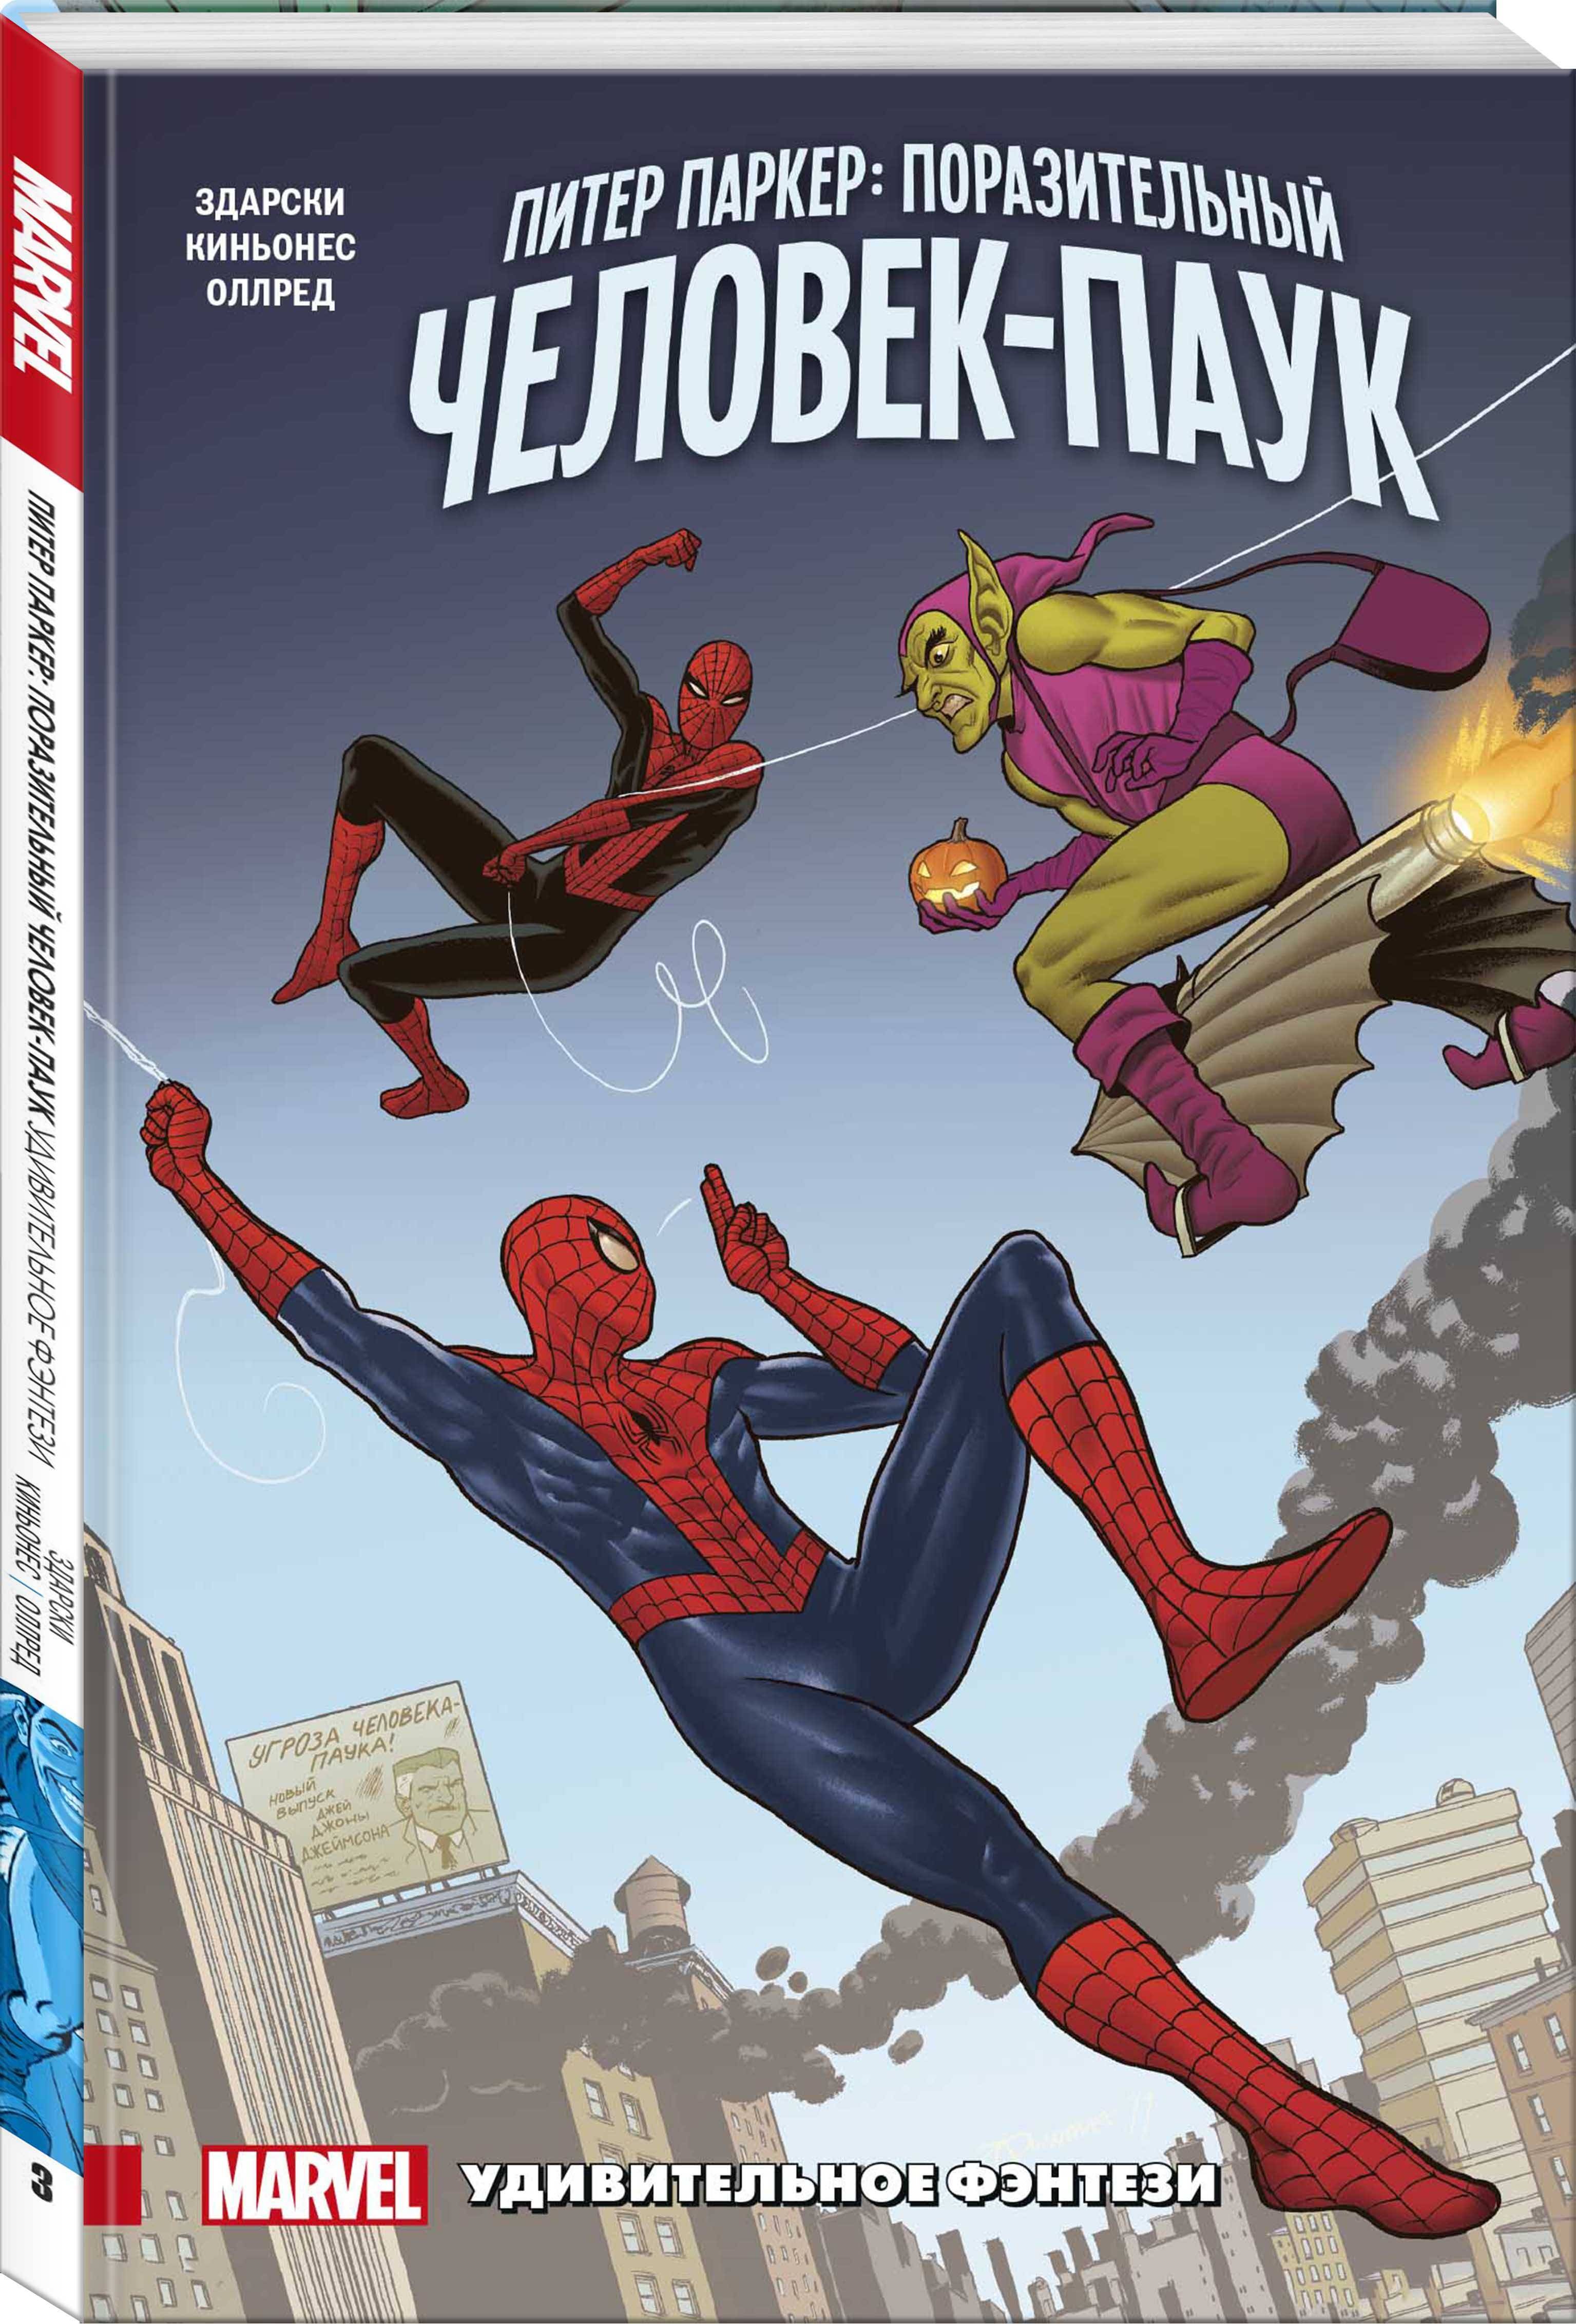 Обложка книги Здарски Чип: Питер Паркер. Поразительный Человек-Паук. Том 3. Удивительное фэнтези